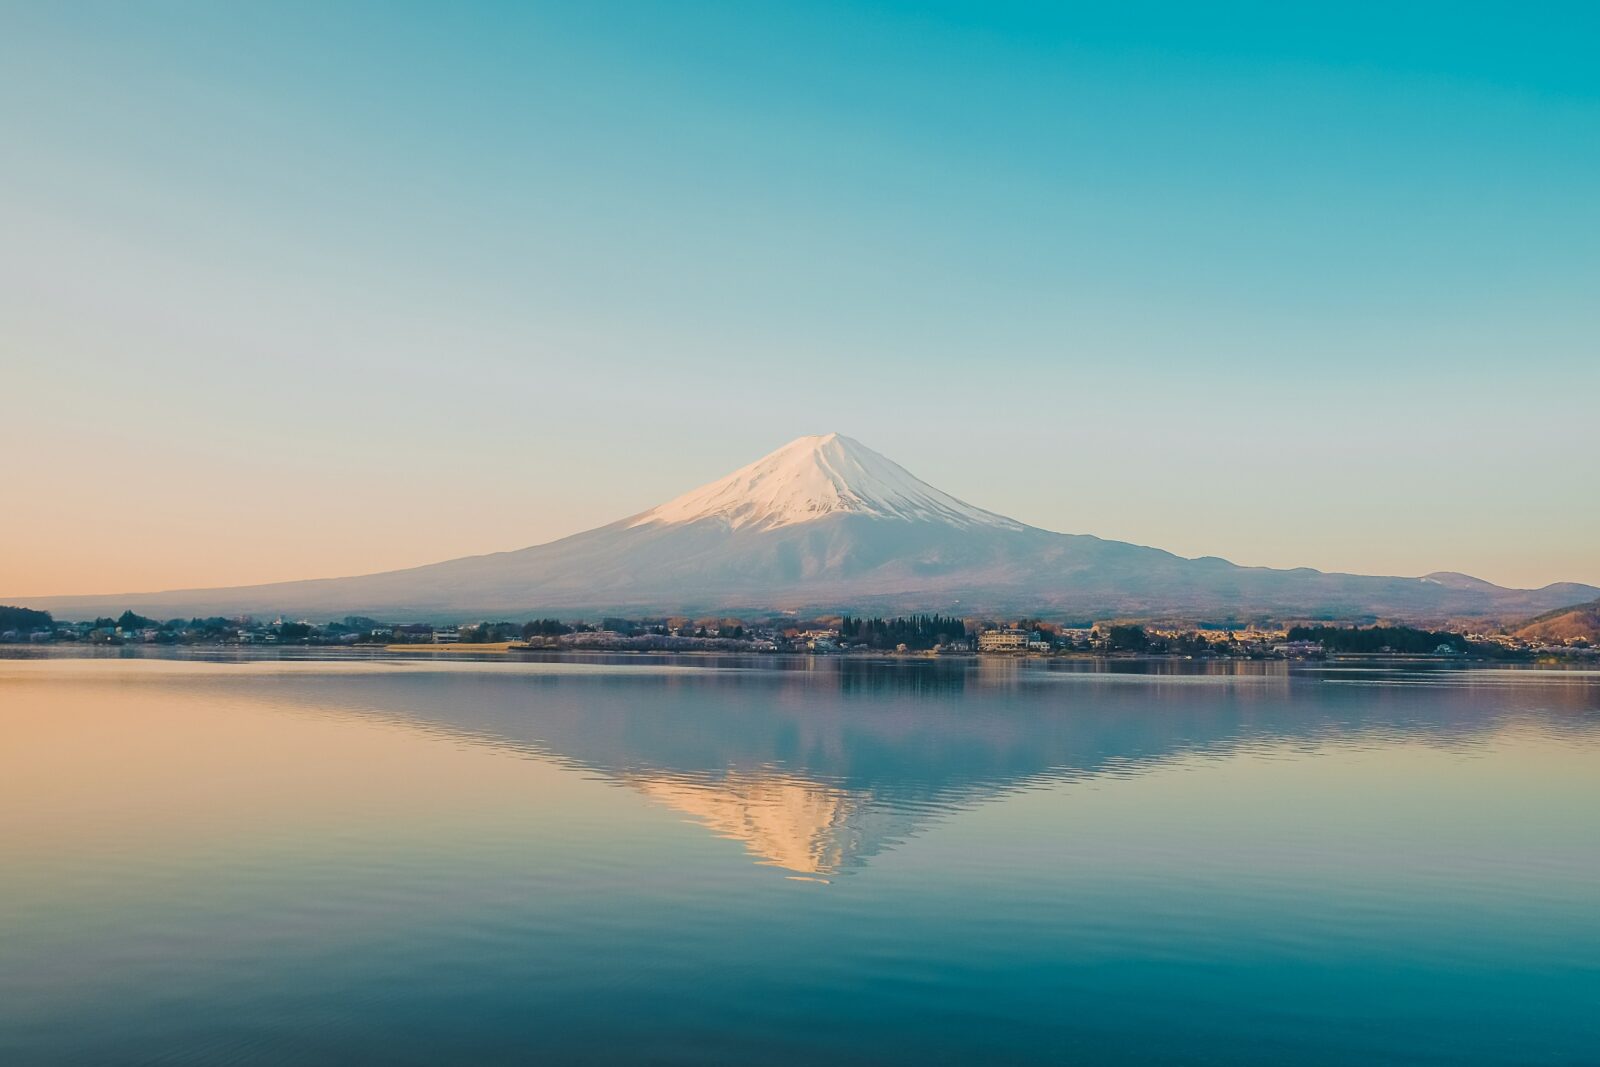 河口湖溫泉讓妳一邊泡湯一邊看富士山